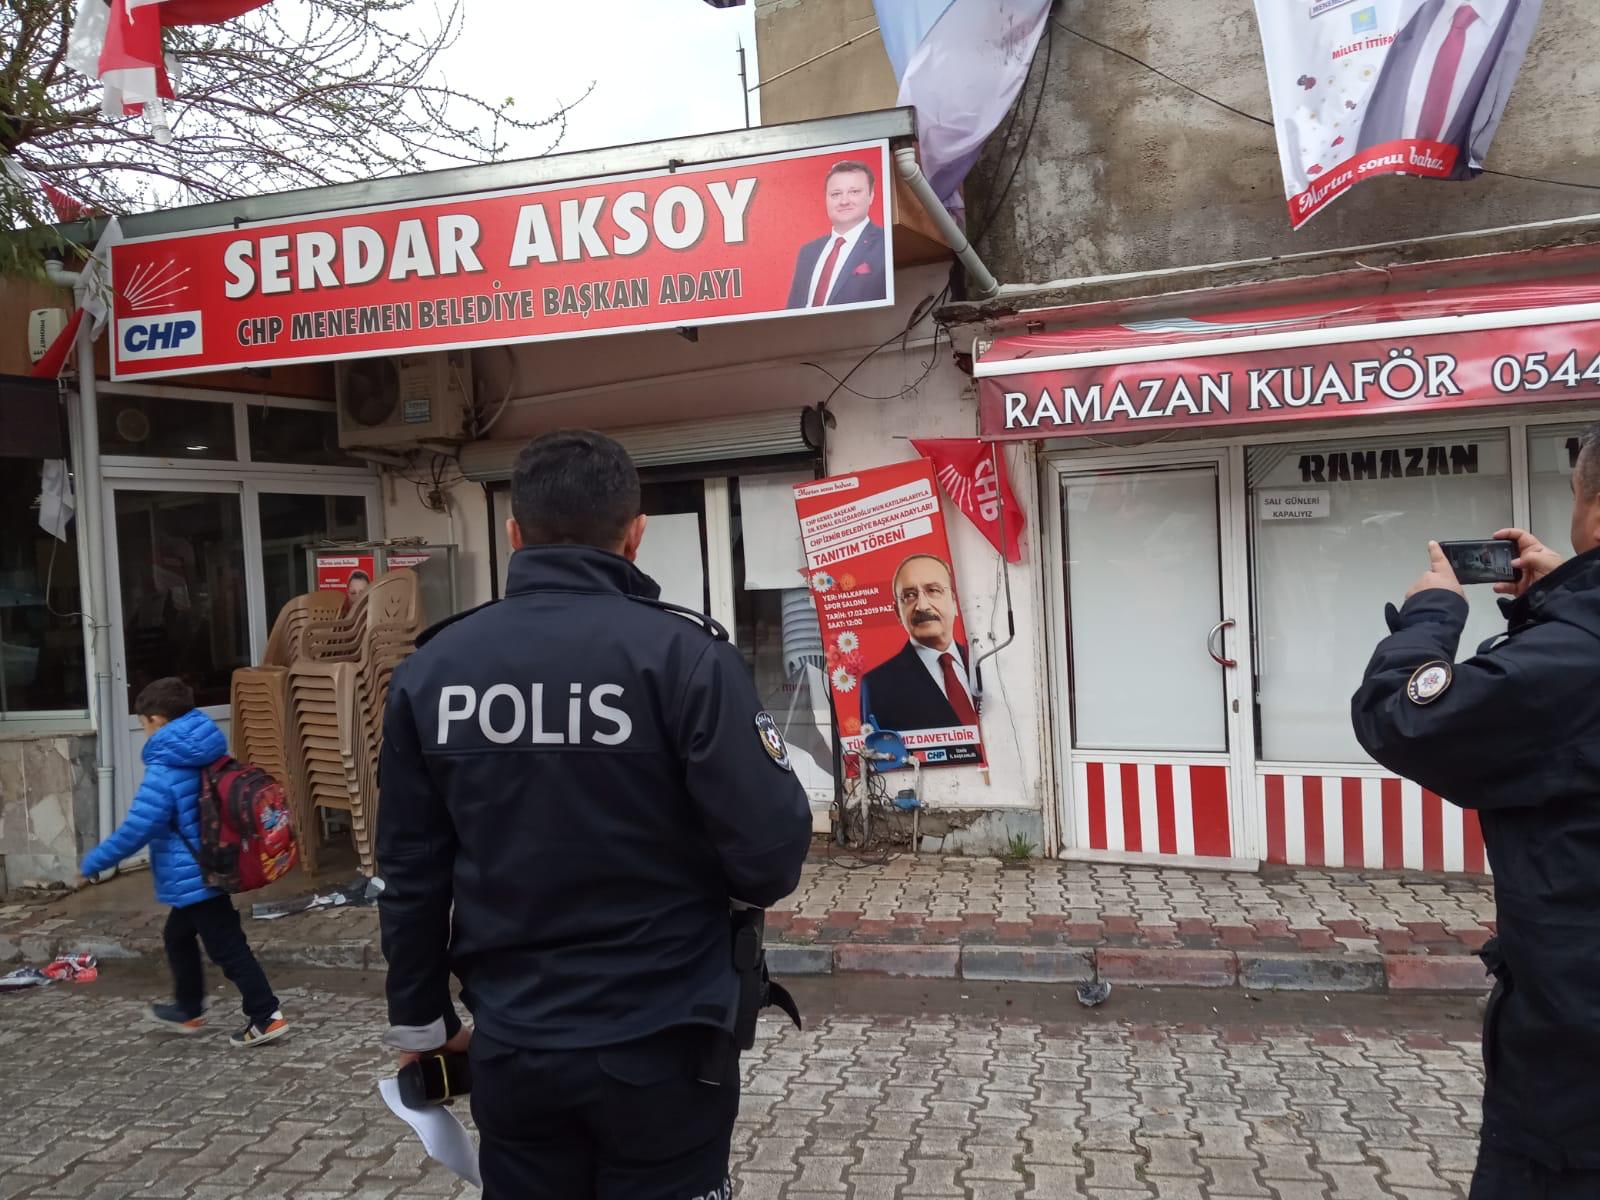 İzmir'de seçim bürosuna gerçekleştirilen saldırıdan kareler 1